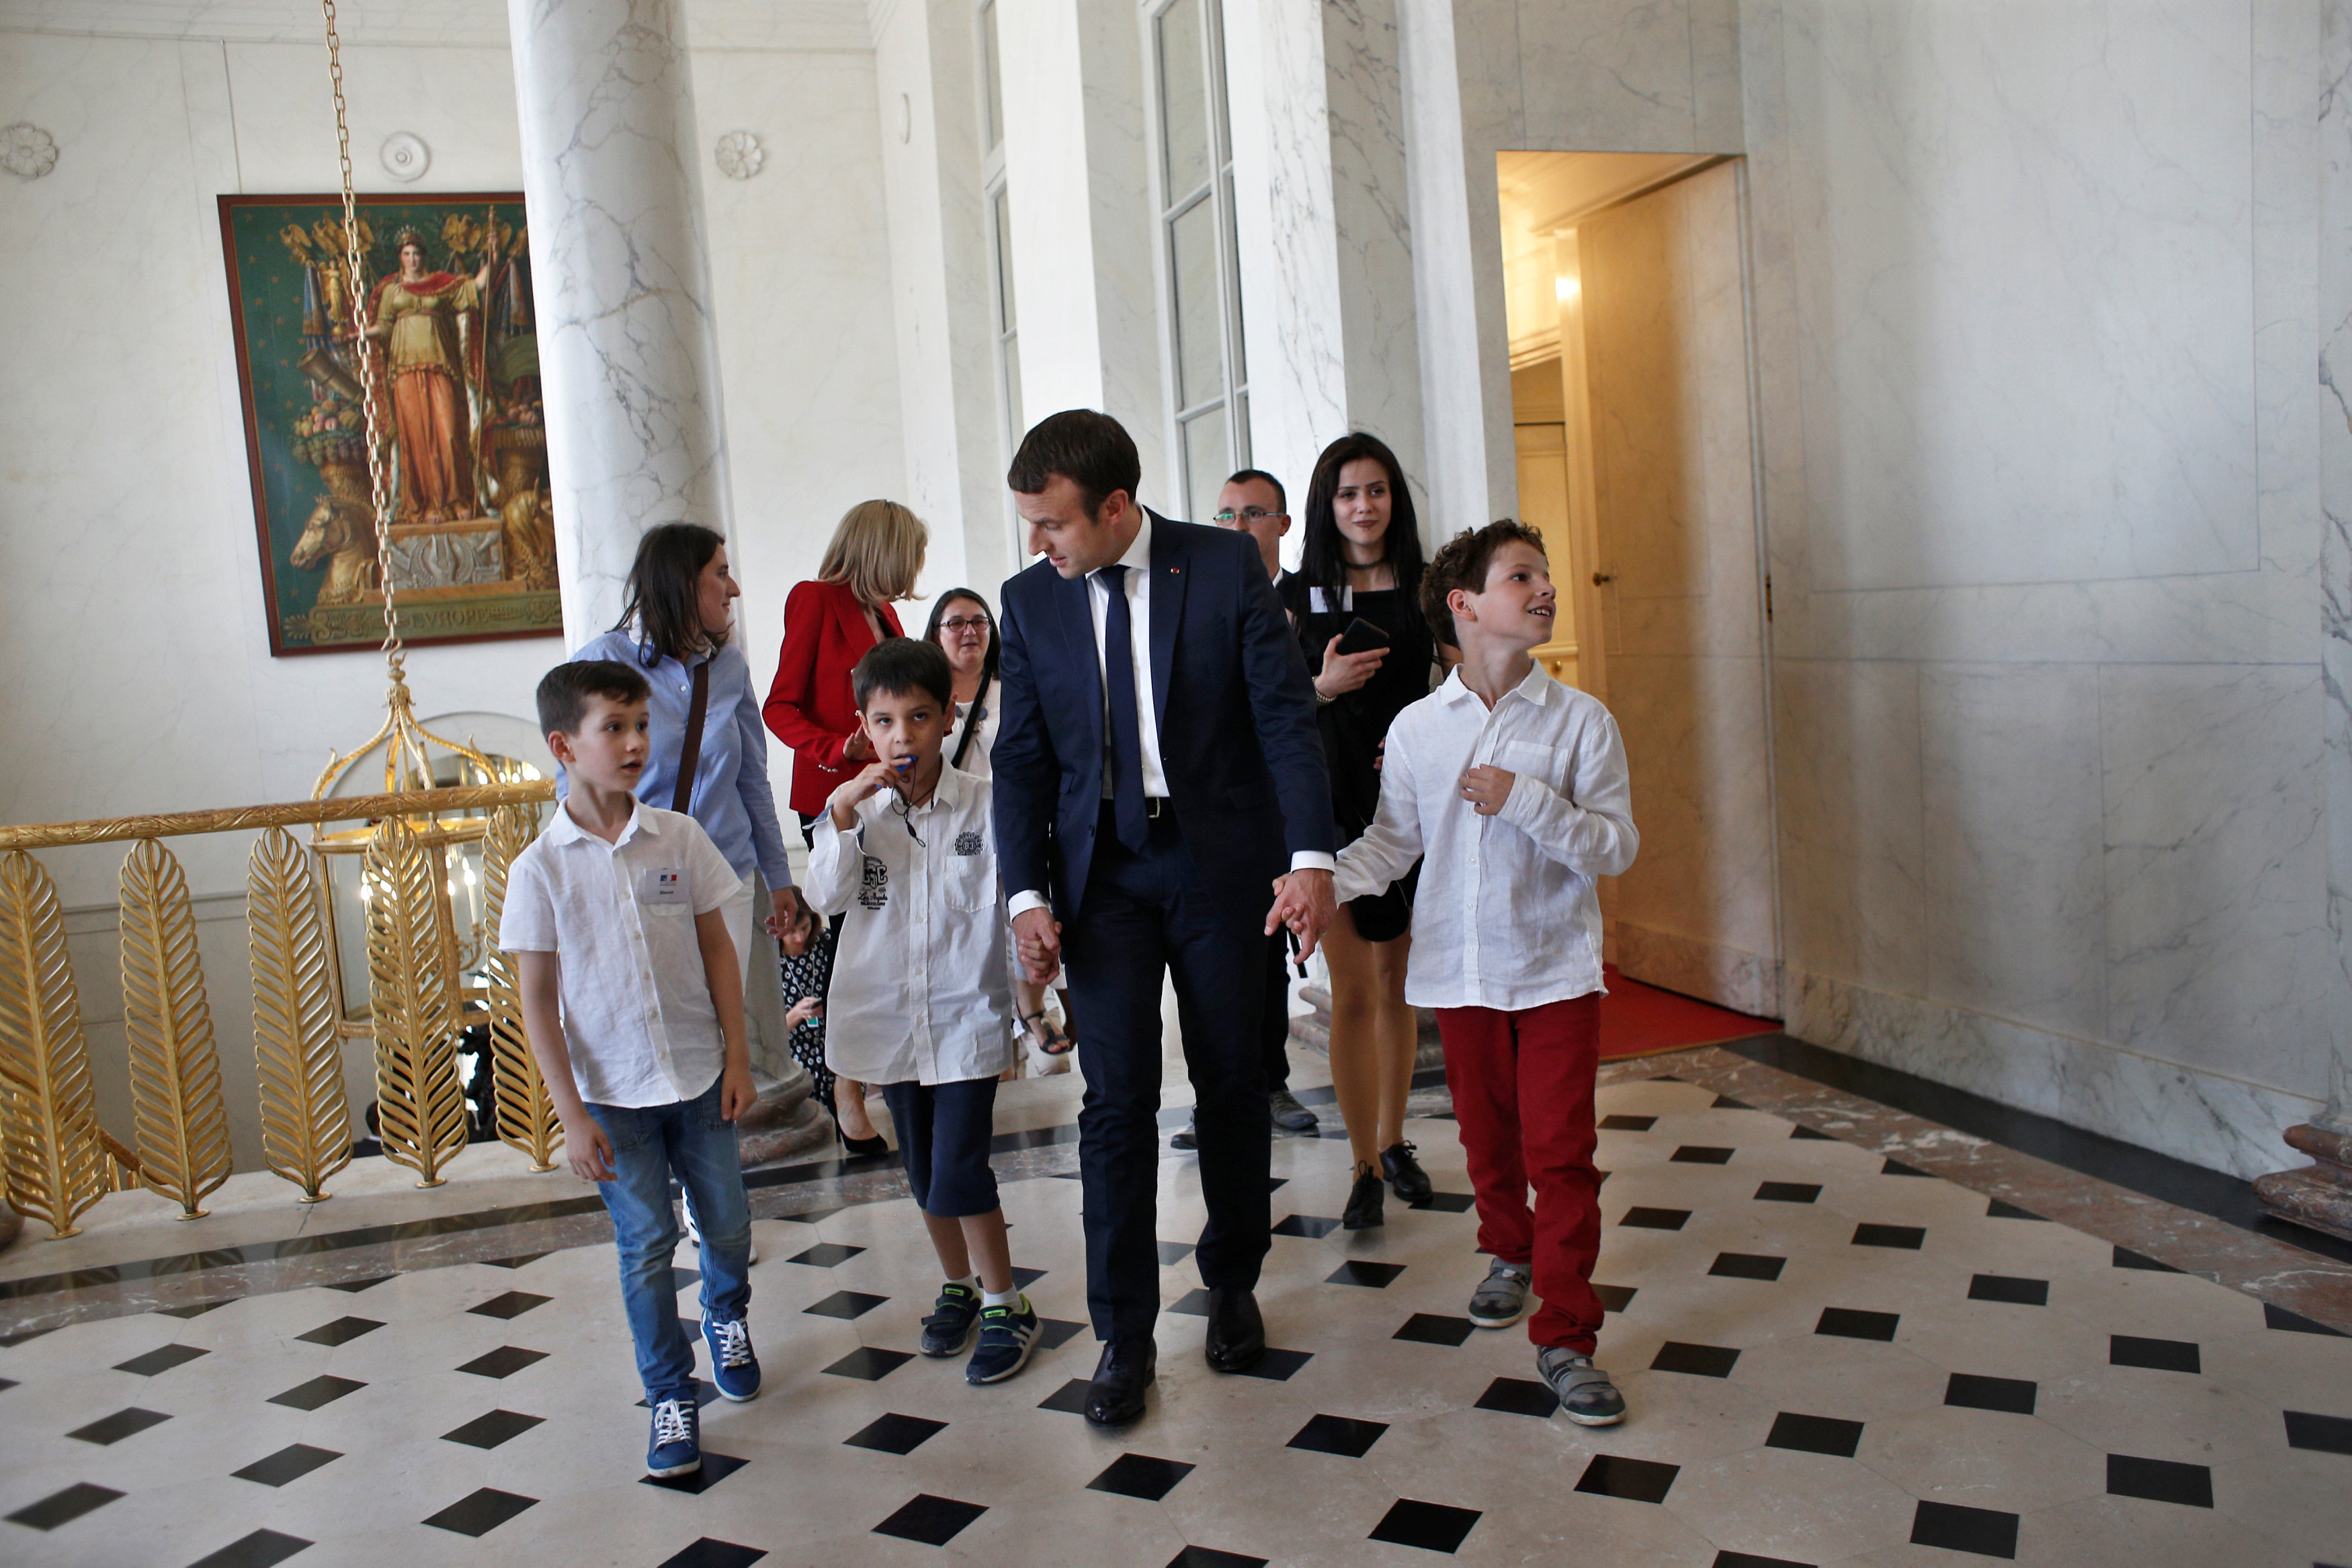 الرئيس الفرنسي يصطحب الأطفال